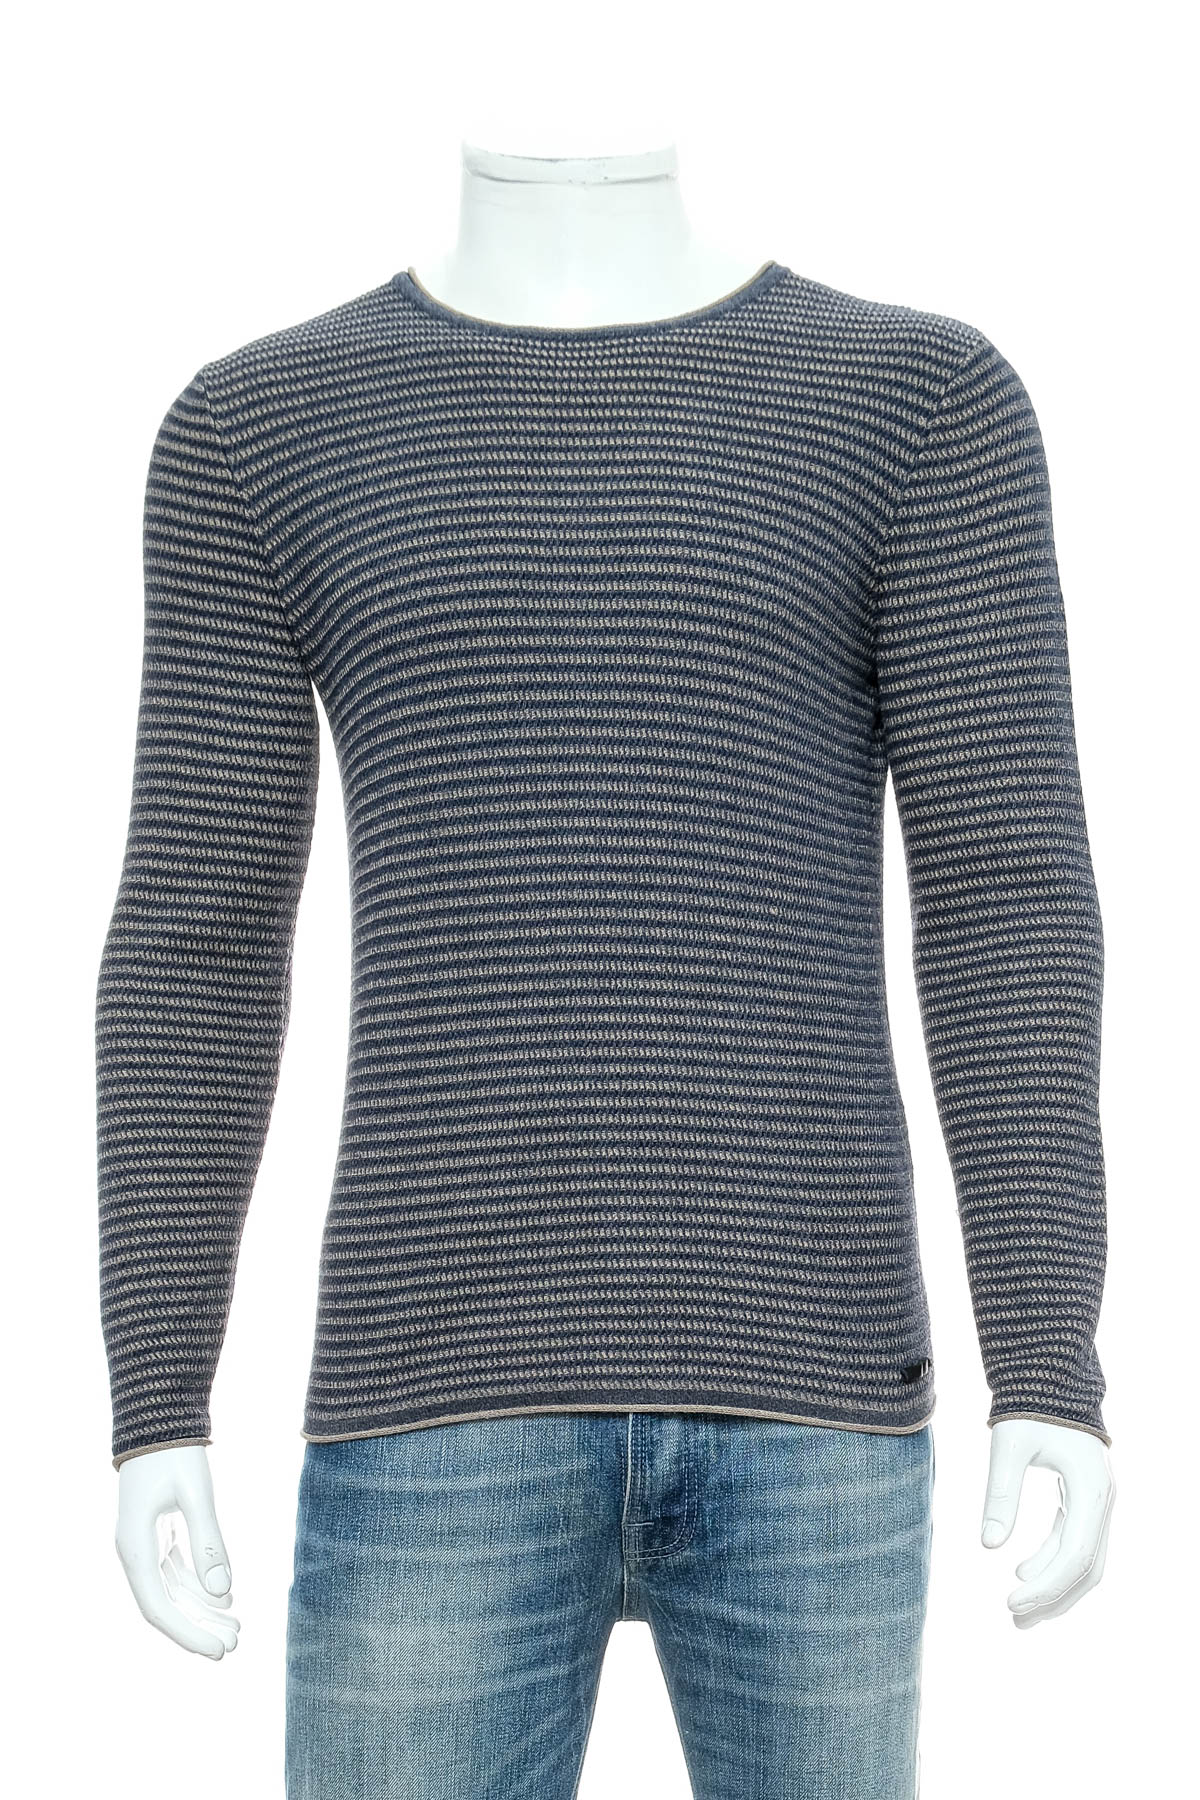 Men's sweater - Garcia Jeans - 0